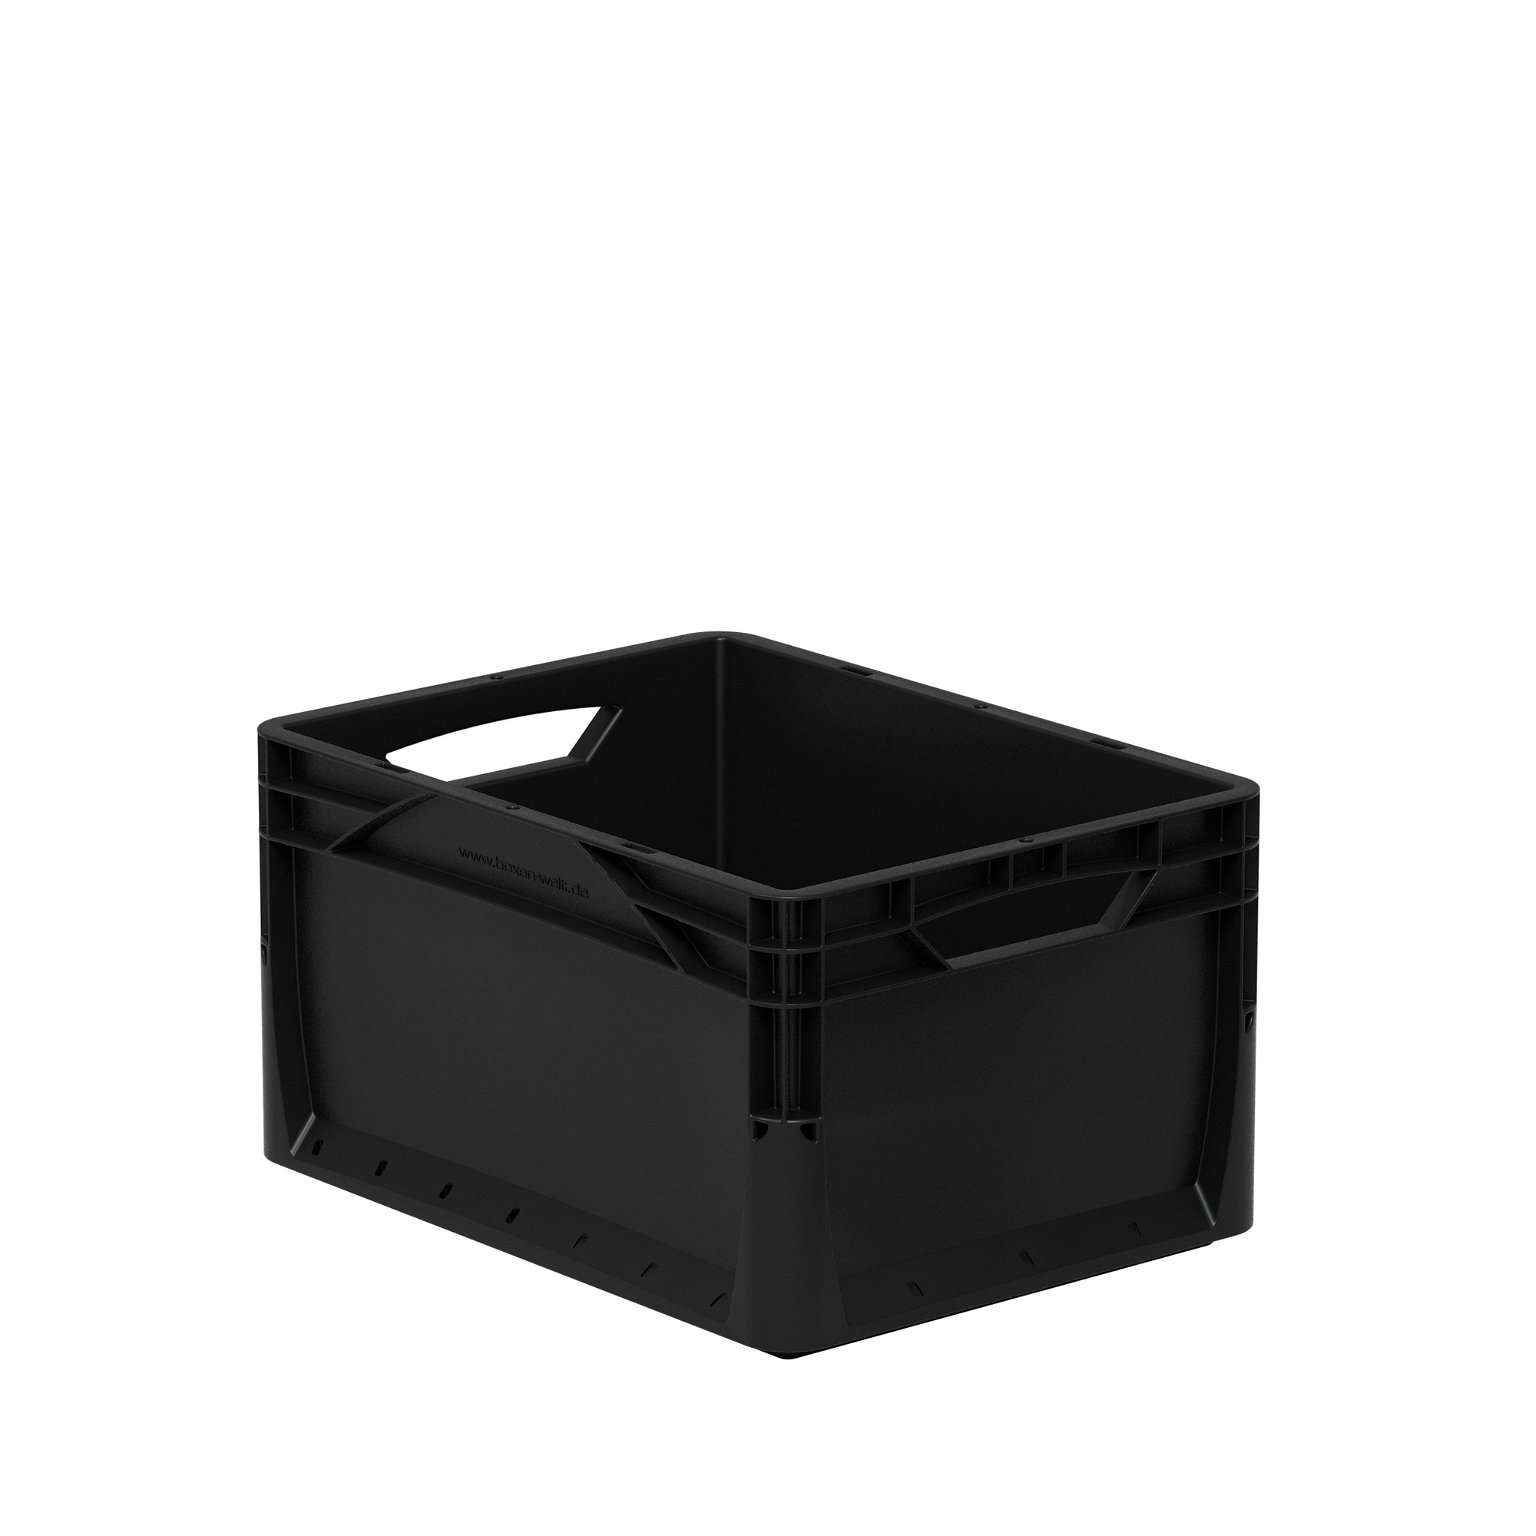 Daiktų laikymo dėžė Eurobox system 40x30xh22 cm, juoda, 20 l